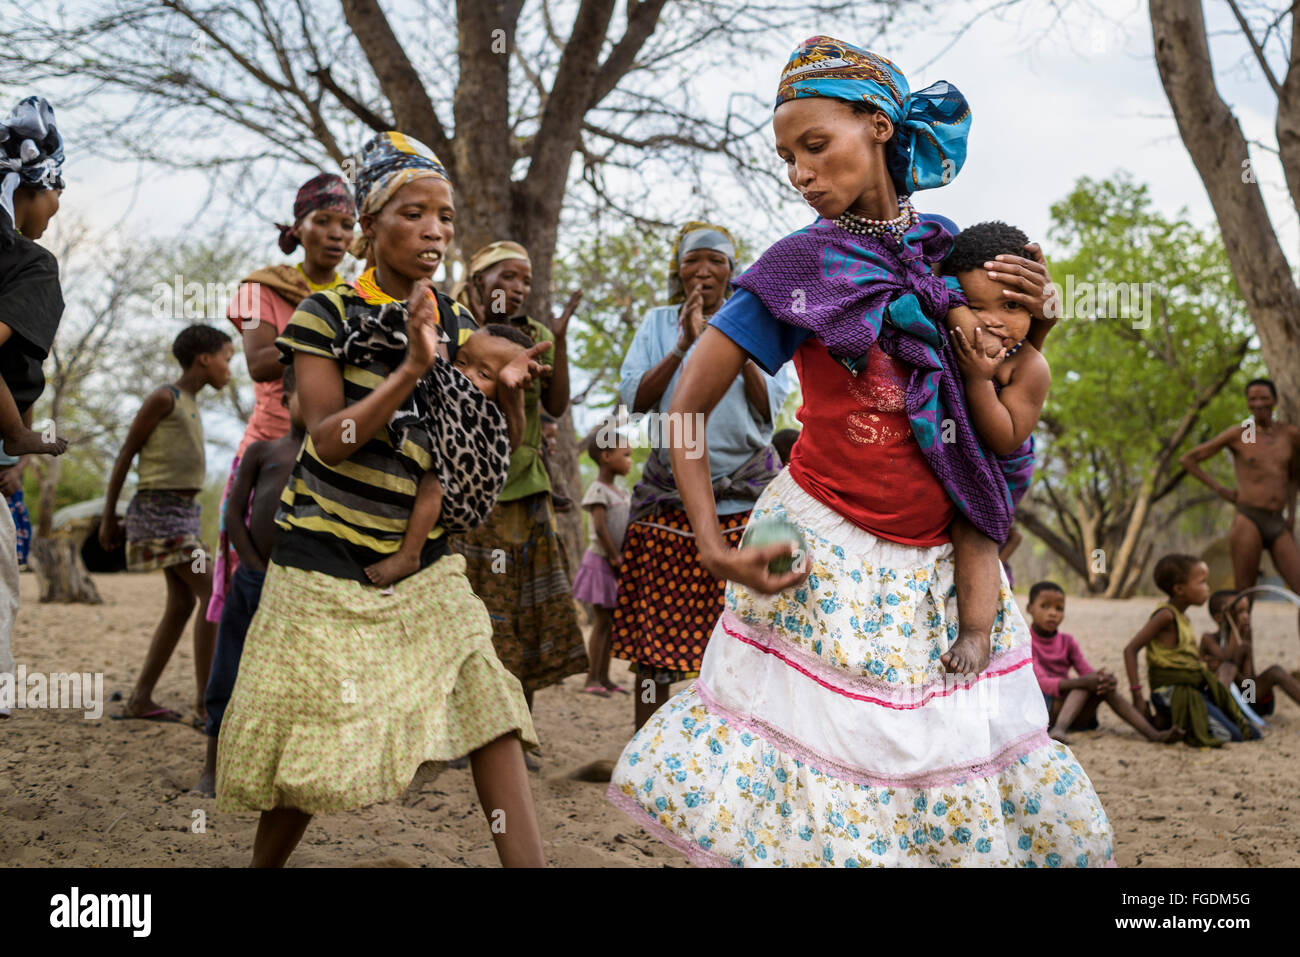 Groupe de personnes de la tribu San joue un jeu avec un fruit appelé 'Monkey orange' dans un village éloigné du désert du Kalahari. Banque D'Images